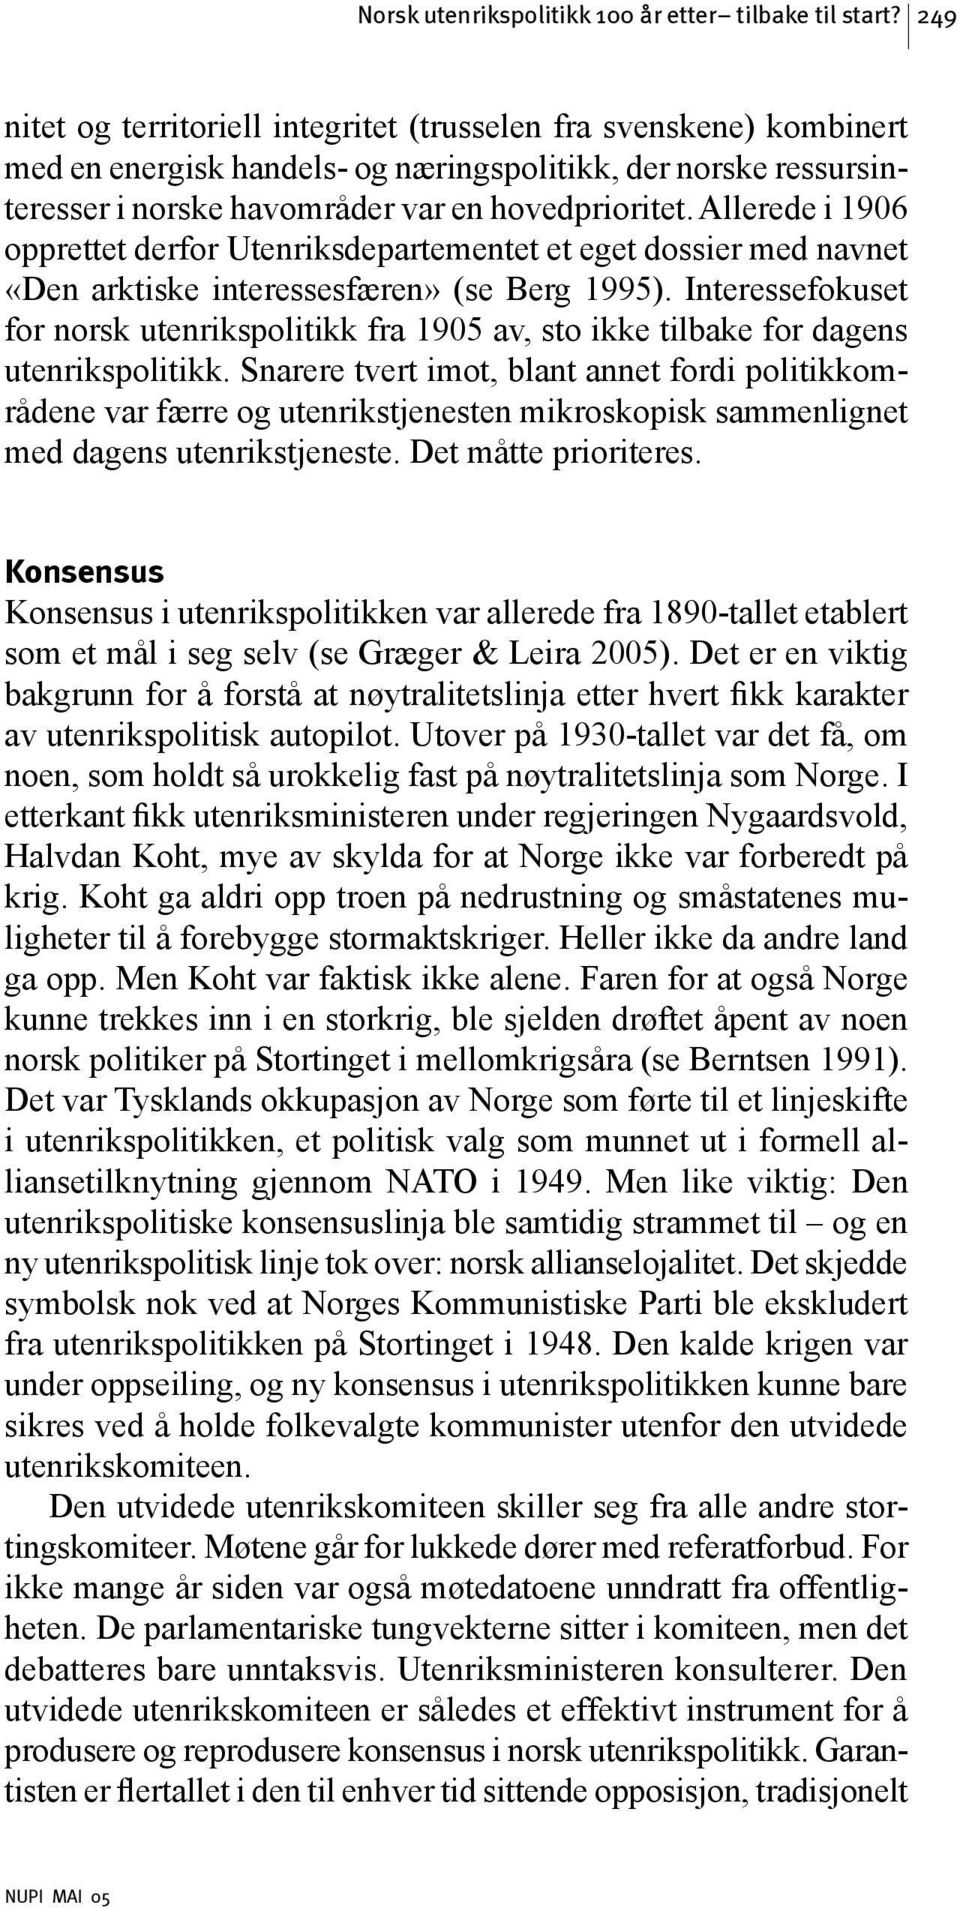 Allerede i 1906 opprettet derfor Utenriksdepartementet et eget dossier med navnet «Den arktiske interessesfæren» (se Berg 1995).